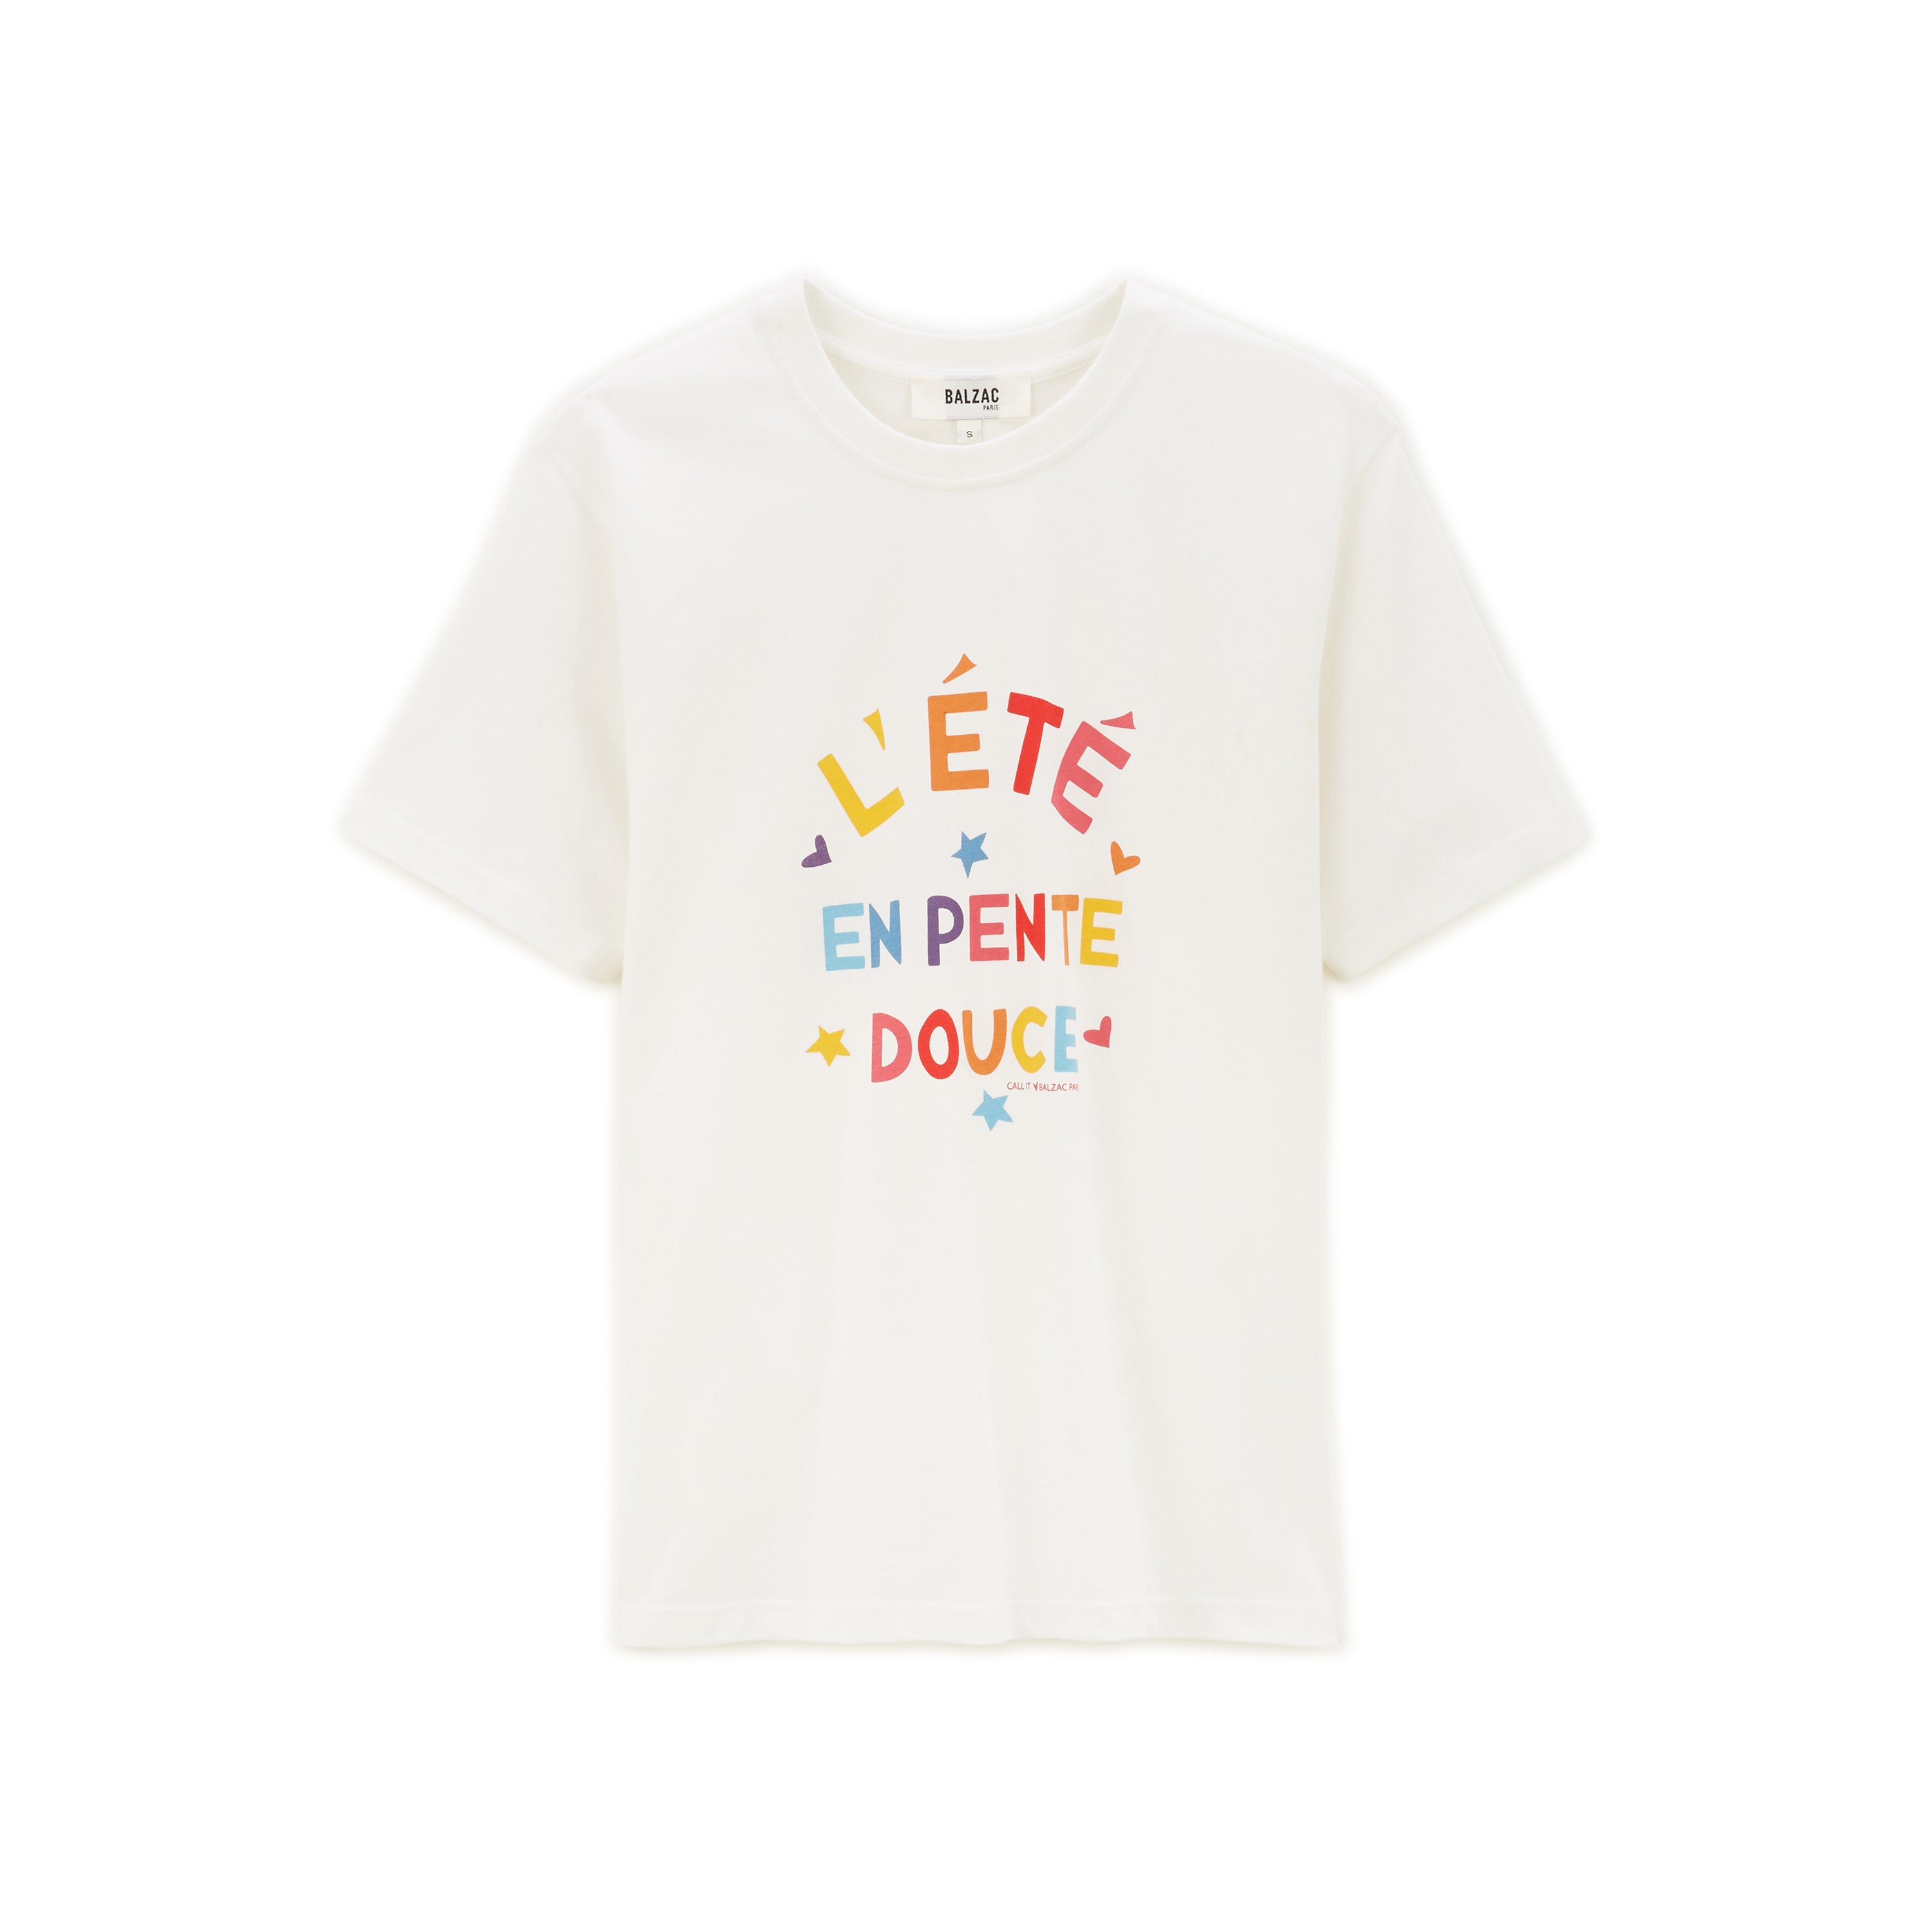 Tee-shirt Bree L'été en pente douce multicolore